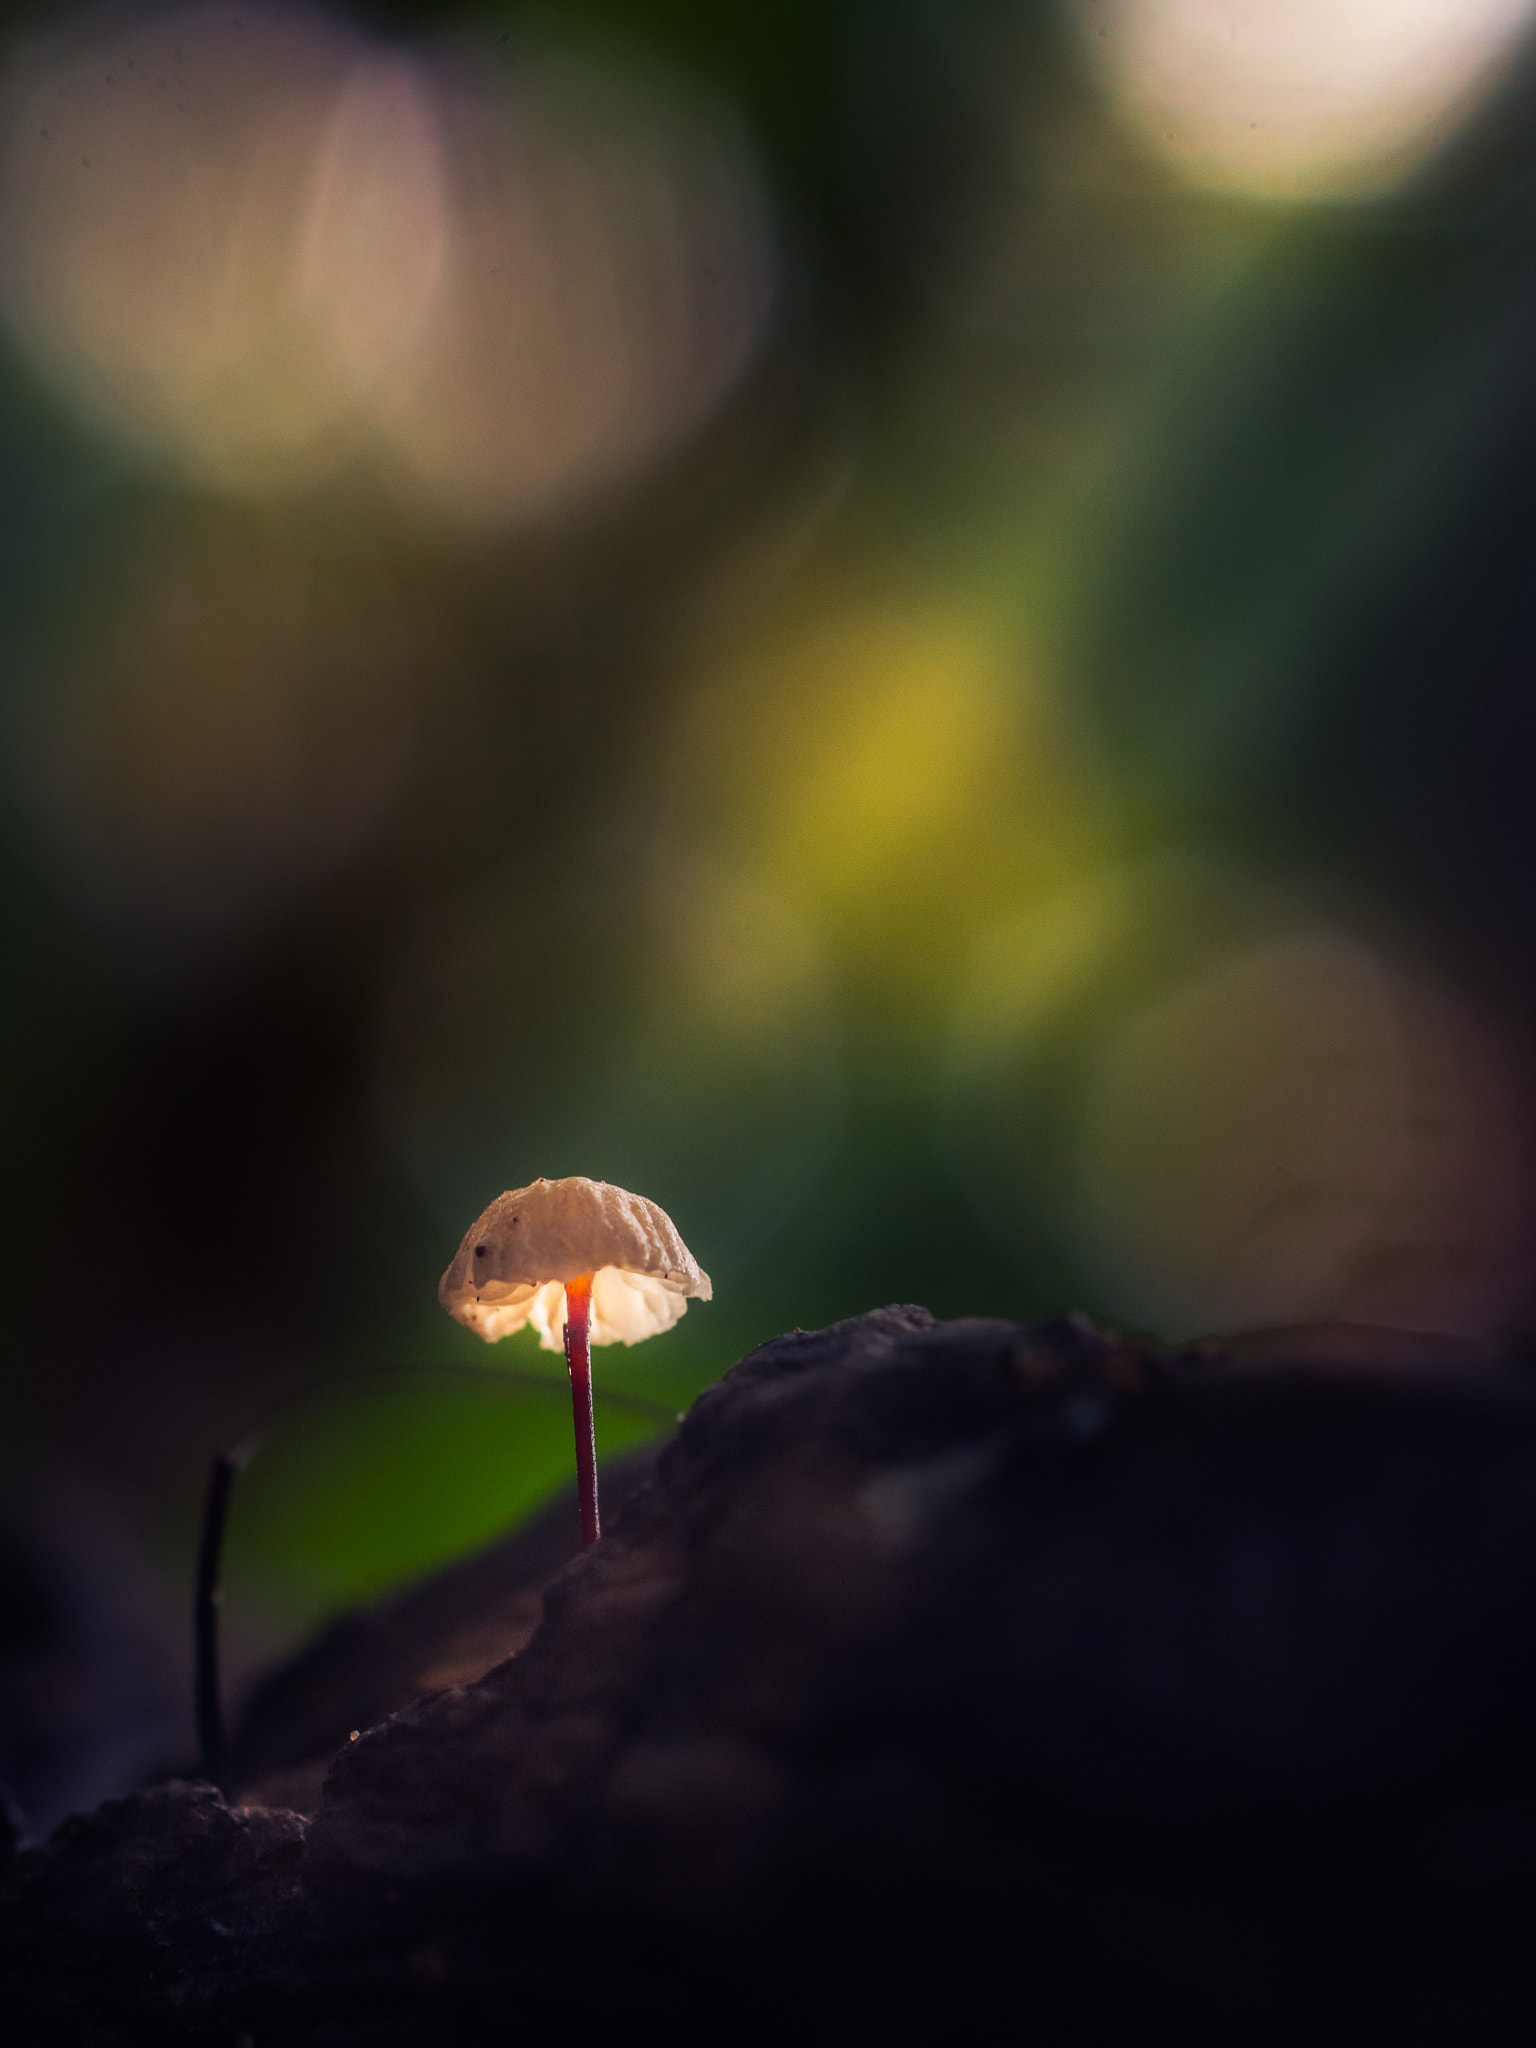 Nikon D5200 sample photo. Tiny mushroom photography